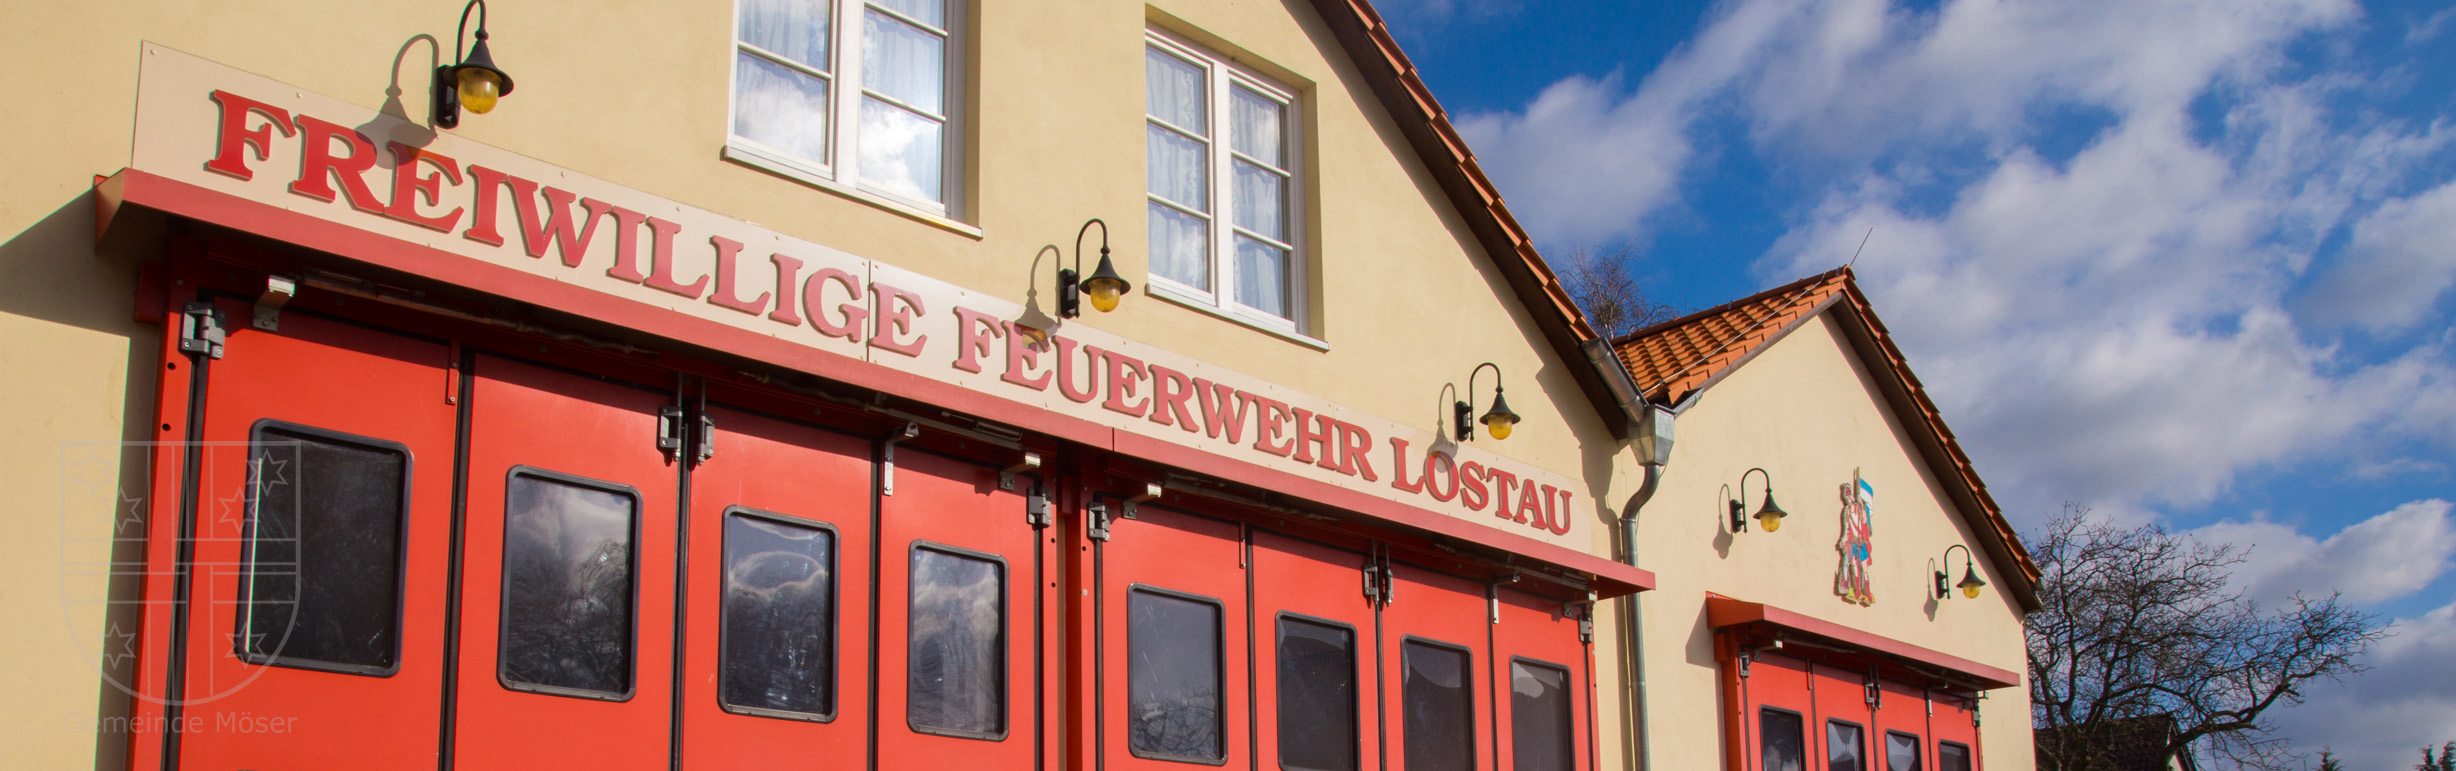 Freiwillige Feuerwehr Lostau Gerätehaus